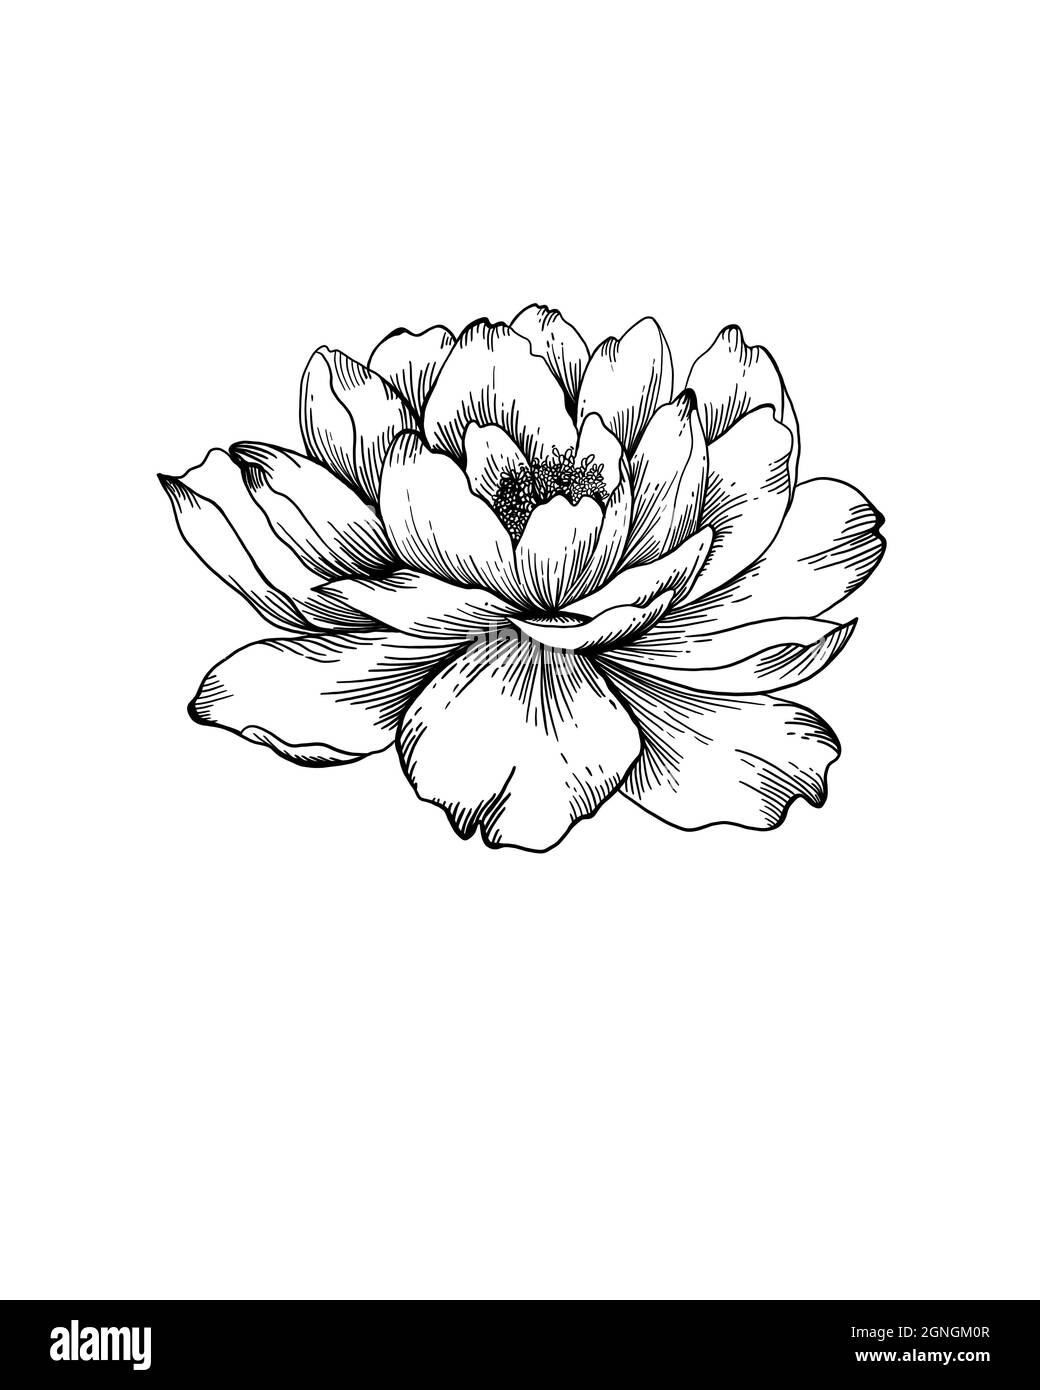 Wildflower Pfingstrose Blume in einem Stil isoliert. Vollständiger Name der Pflanze: Pfingstrose. Wildblume für Hintergrund, Textur, Wrapper-Muster, Rahmen oder Rahmen. Stockfoto